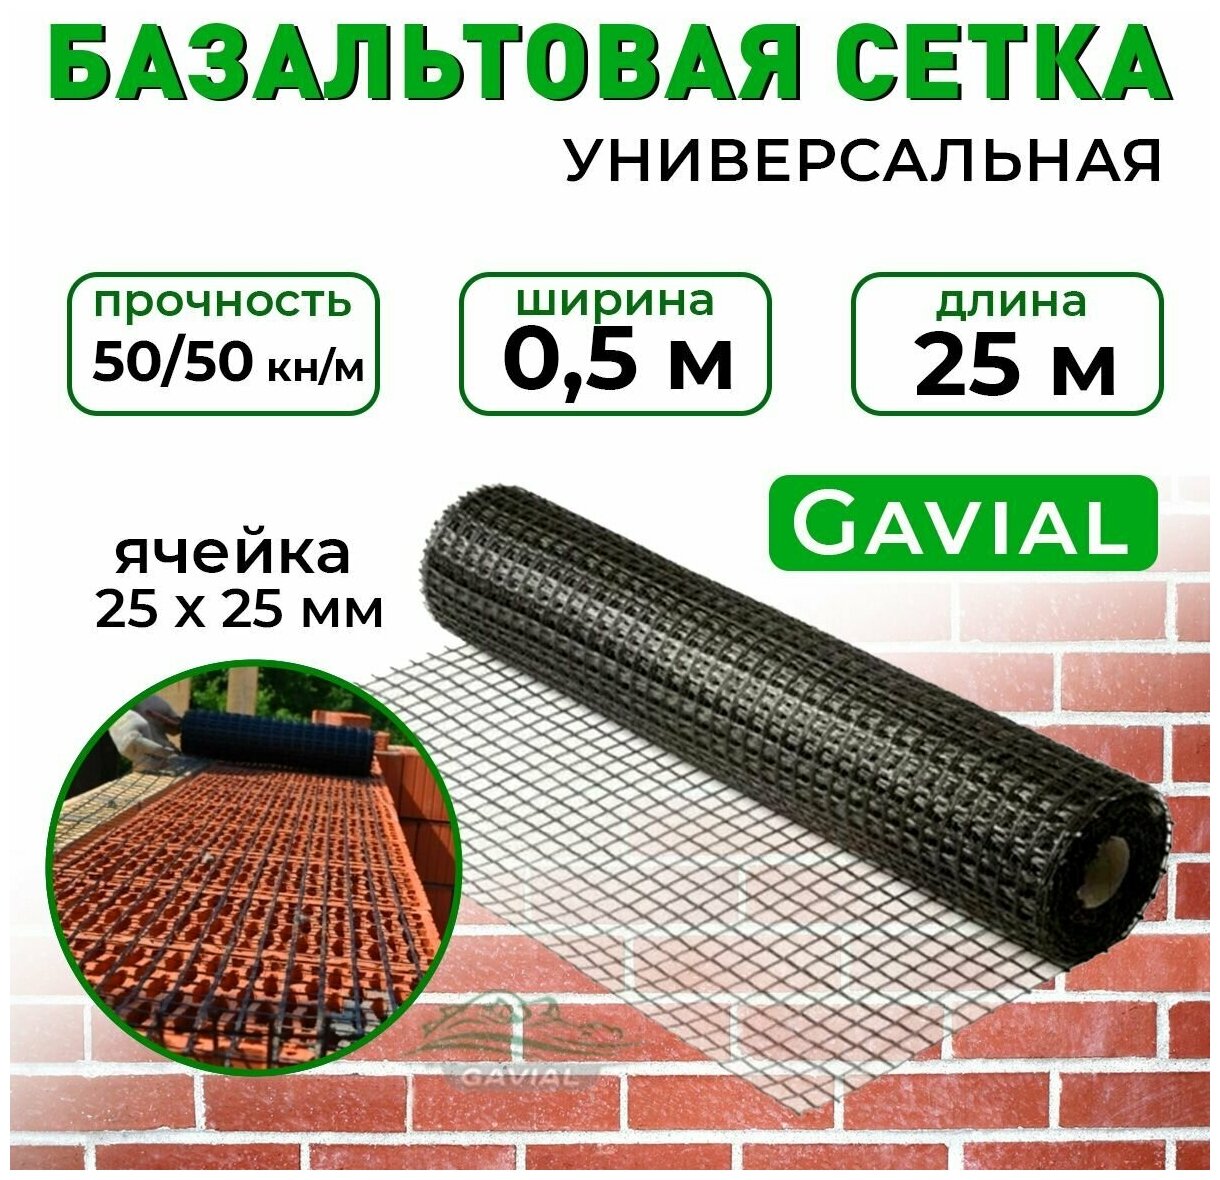 Сетка базальтовая строительная / кладочная композитная Gavial 0,5 м х 25 м, ячейка 25х25, 50/50кН - фотография № 1